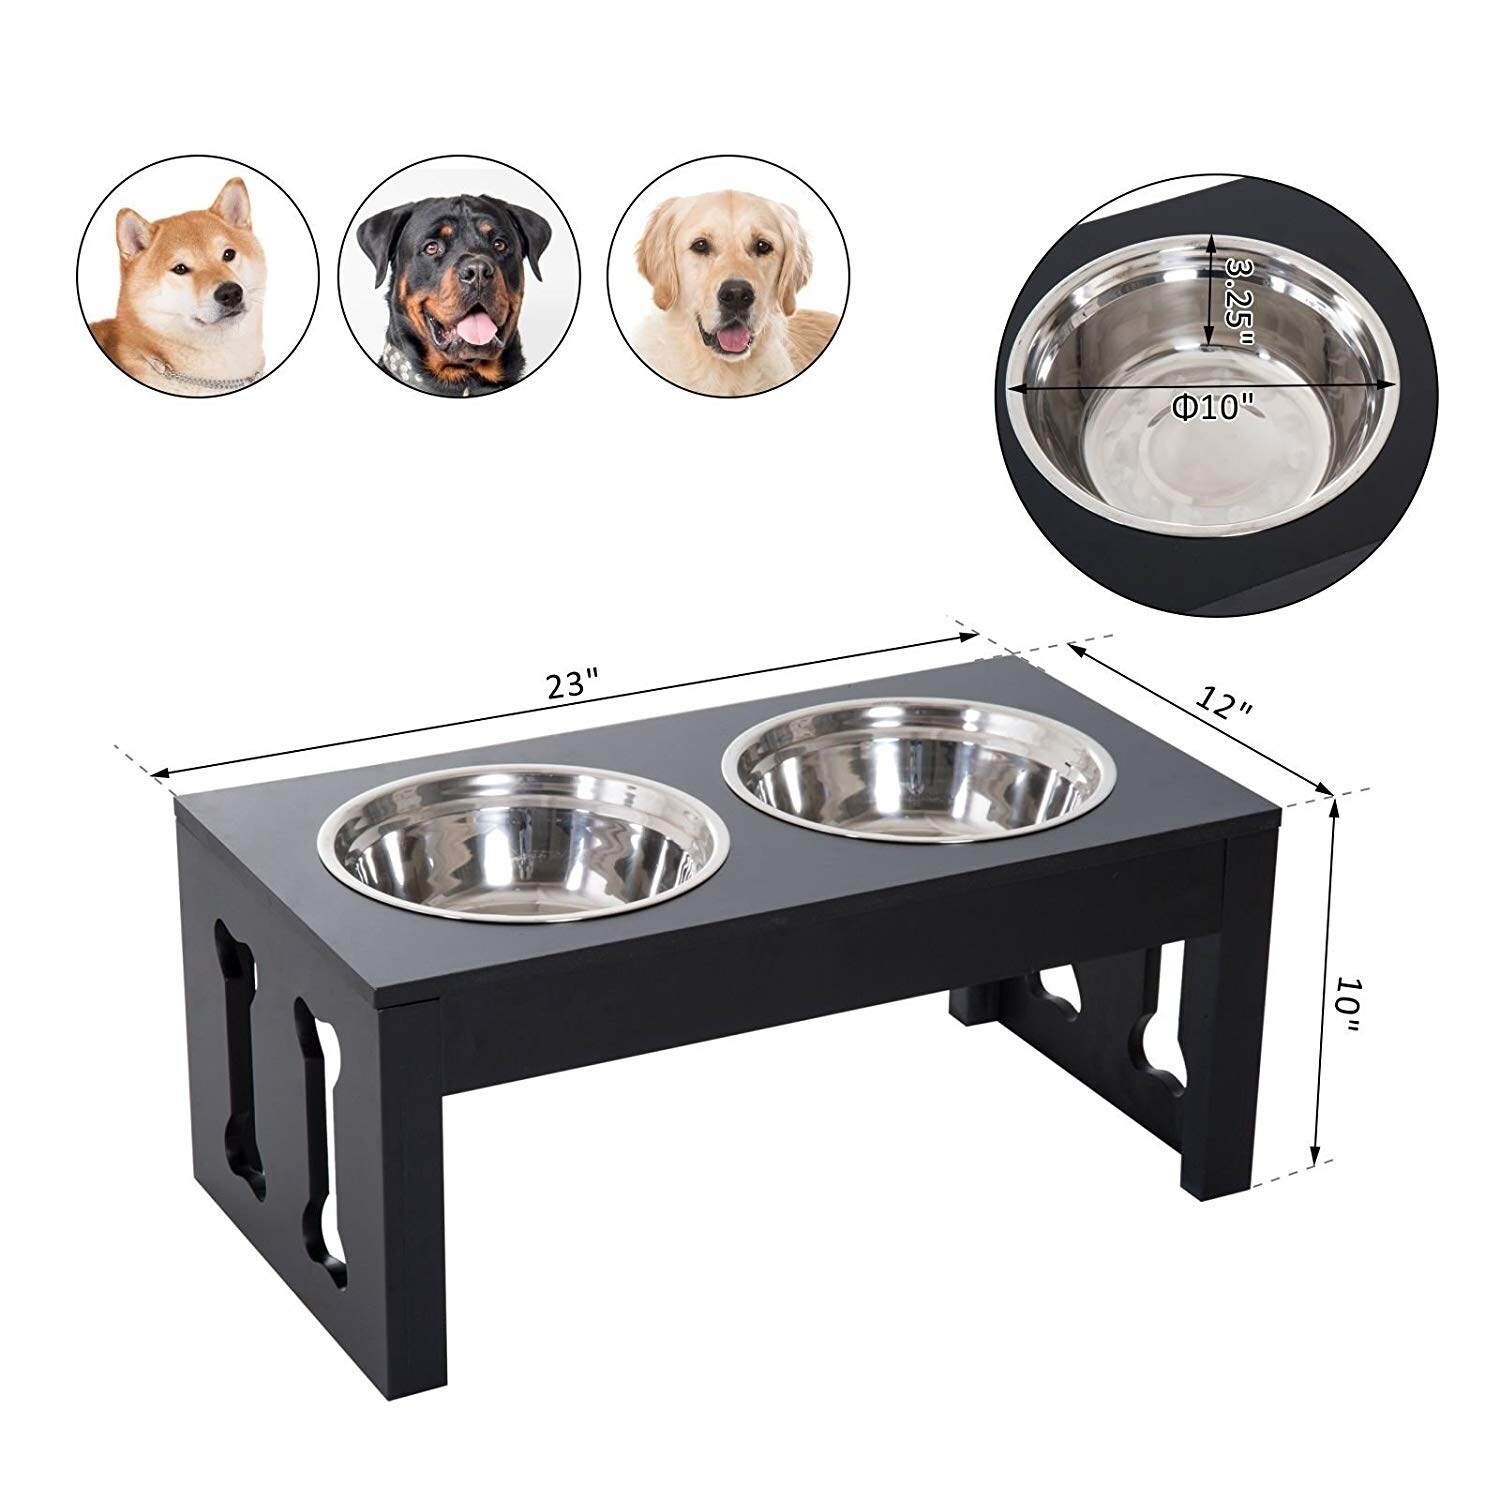 https://ak1.ostkcdn.com/images/products/23056319/PawHut-23-Modern-Decorative-Dog-Bone-Wooden-Heavy-Duty-Pet-Food-Bowl-Elevated-Feeding-Station-Black-023530e8-431a-4126-8be3-b25331c1ccaf.jpg